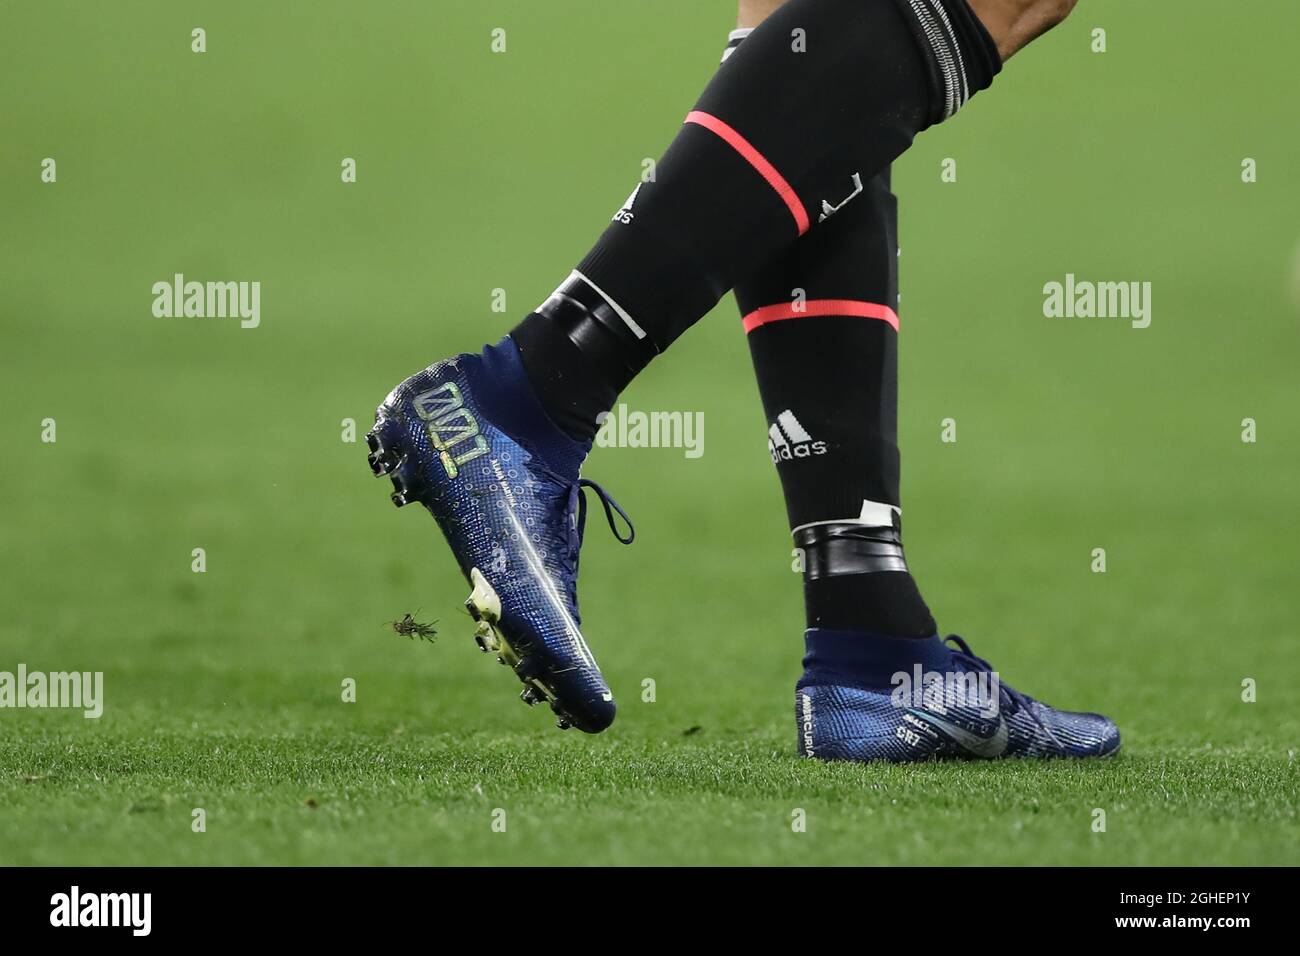 Cristiano Ronaldo de Juventus présente une nouvelle version des chaussures  de football Nike Mercurial lors du match de la Ligue des champions de  l'UEFA au stade Juventus, à Turin. Date de la